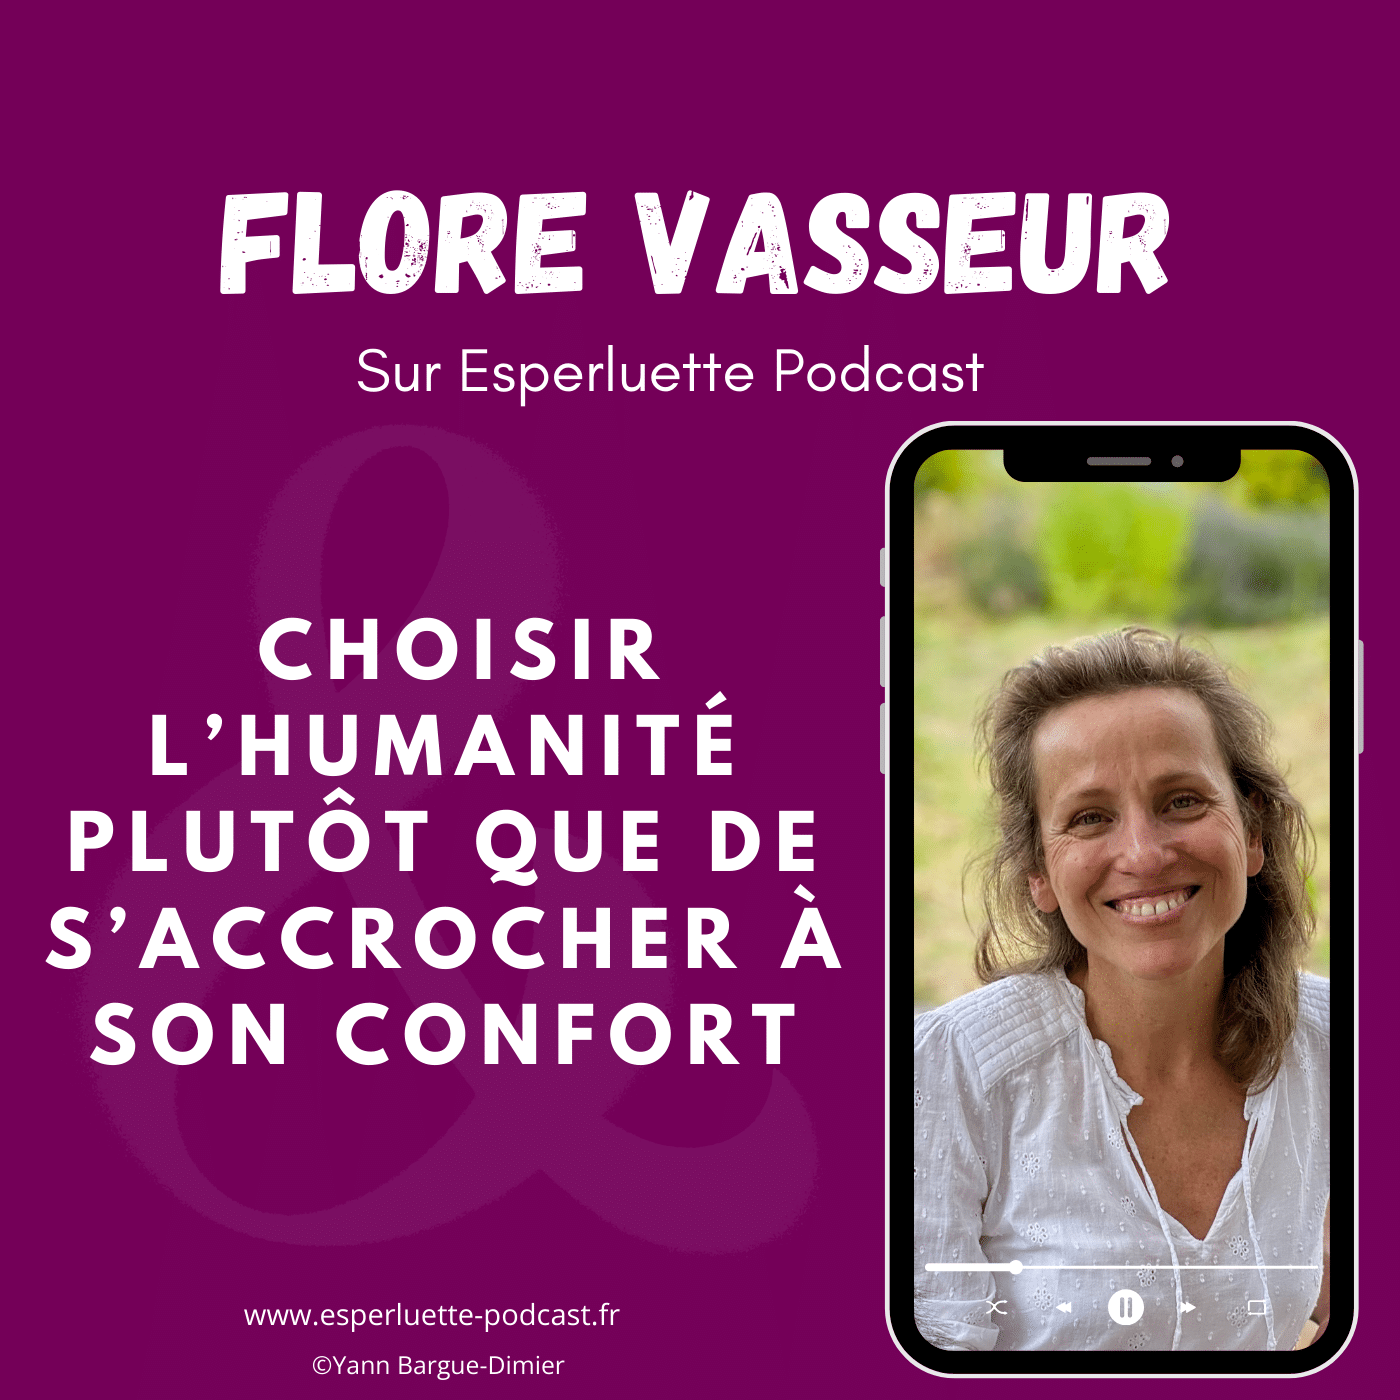 Flore Vasseur, choisir l'humanité plutôt que de s'accrocher à son confort - Interview sur Esperluette podcast